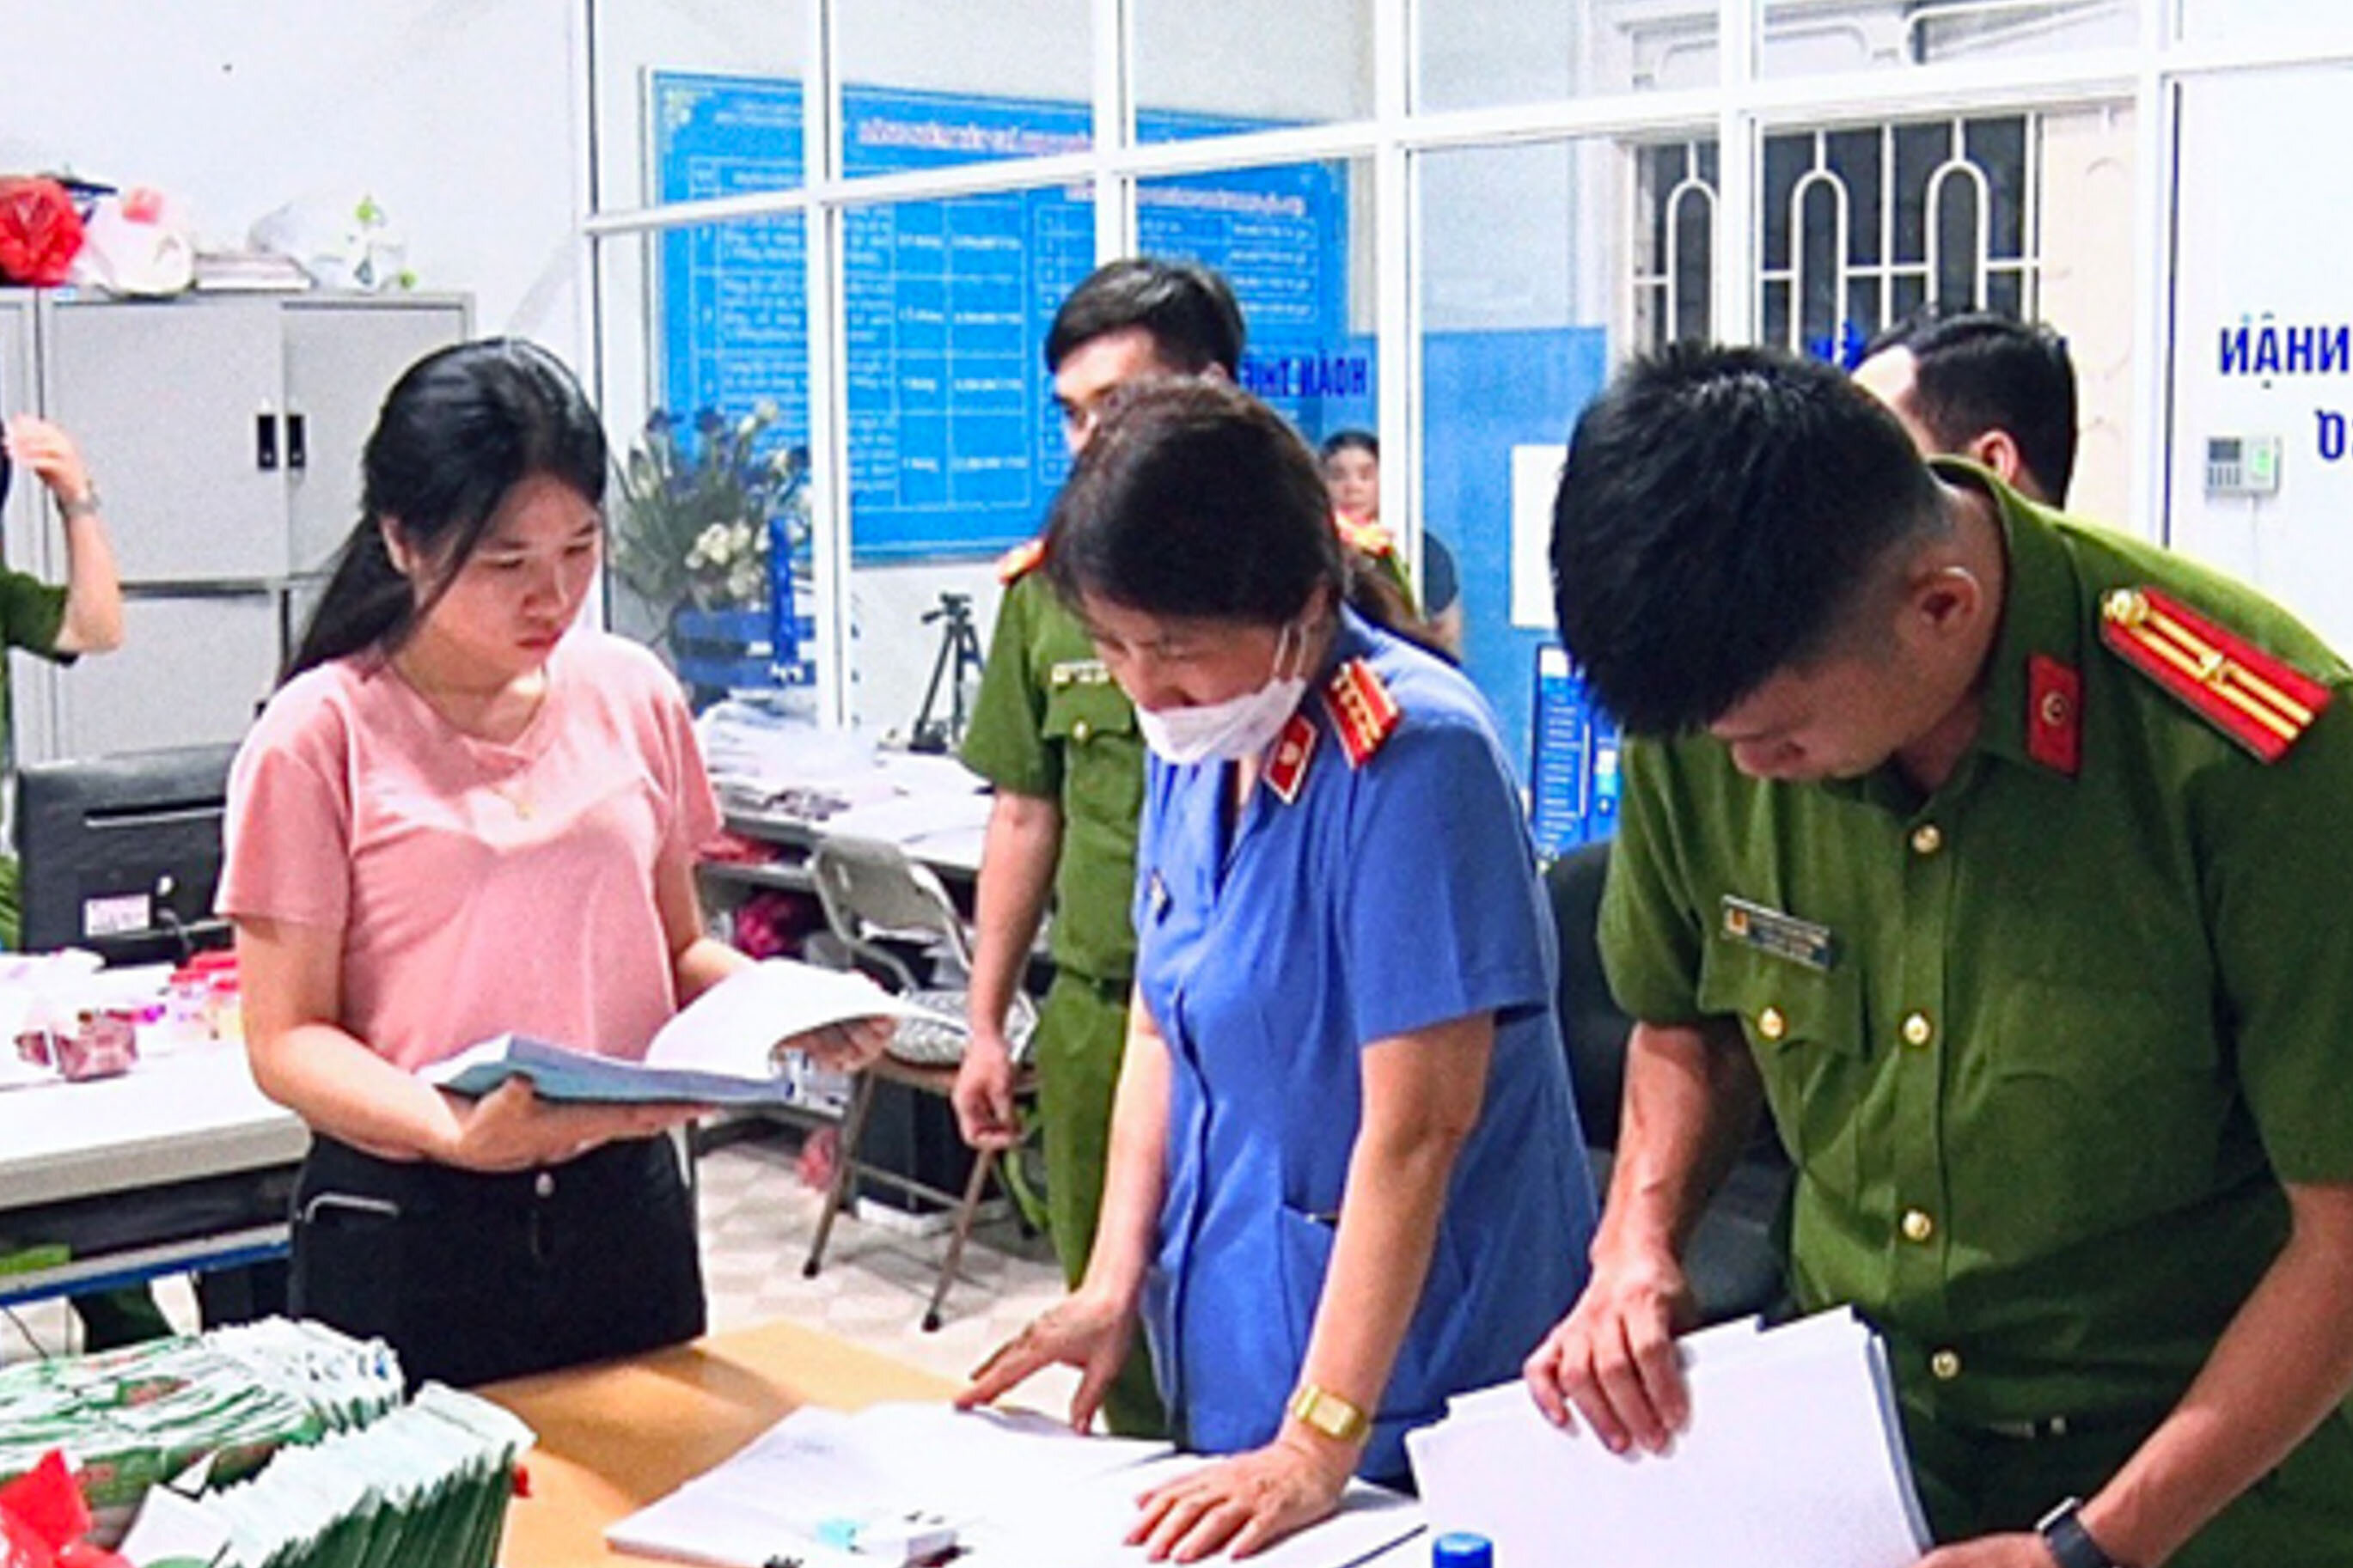 Lạng Sơn: Khởi tố 9 người về hành vi đưa, nhận hối lộ trong sát hạch lái xe - 1